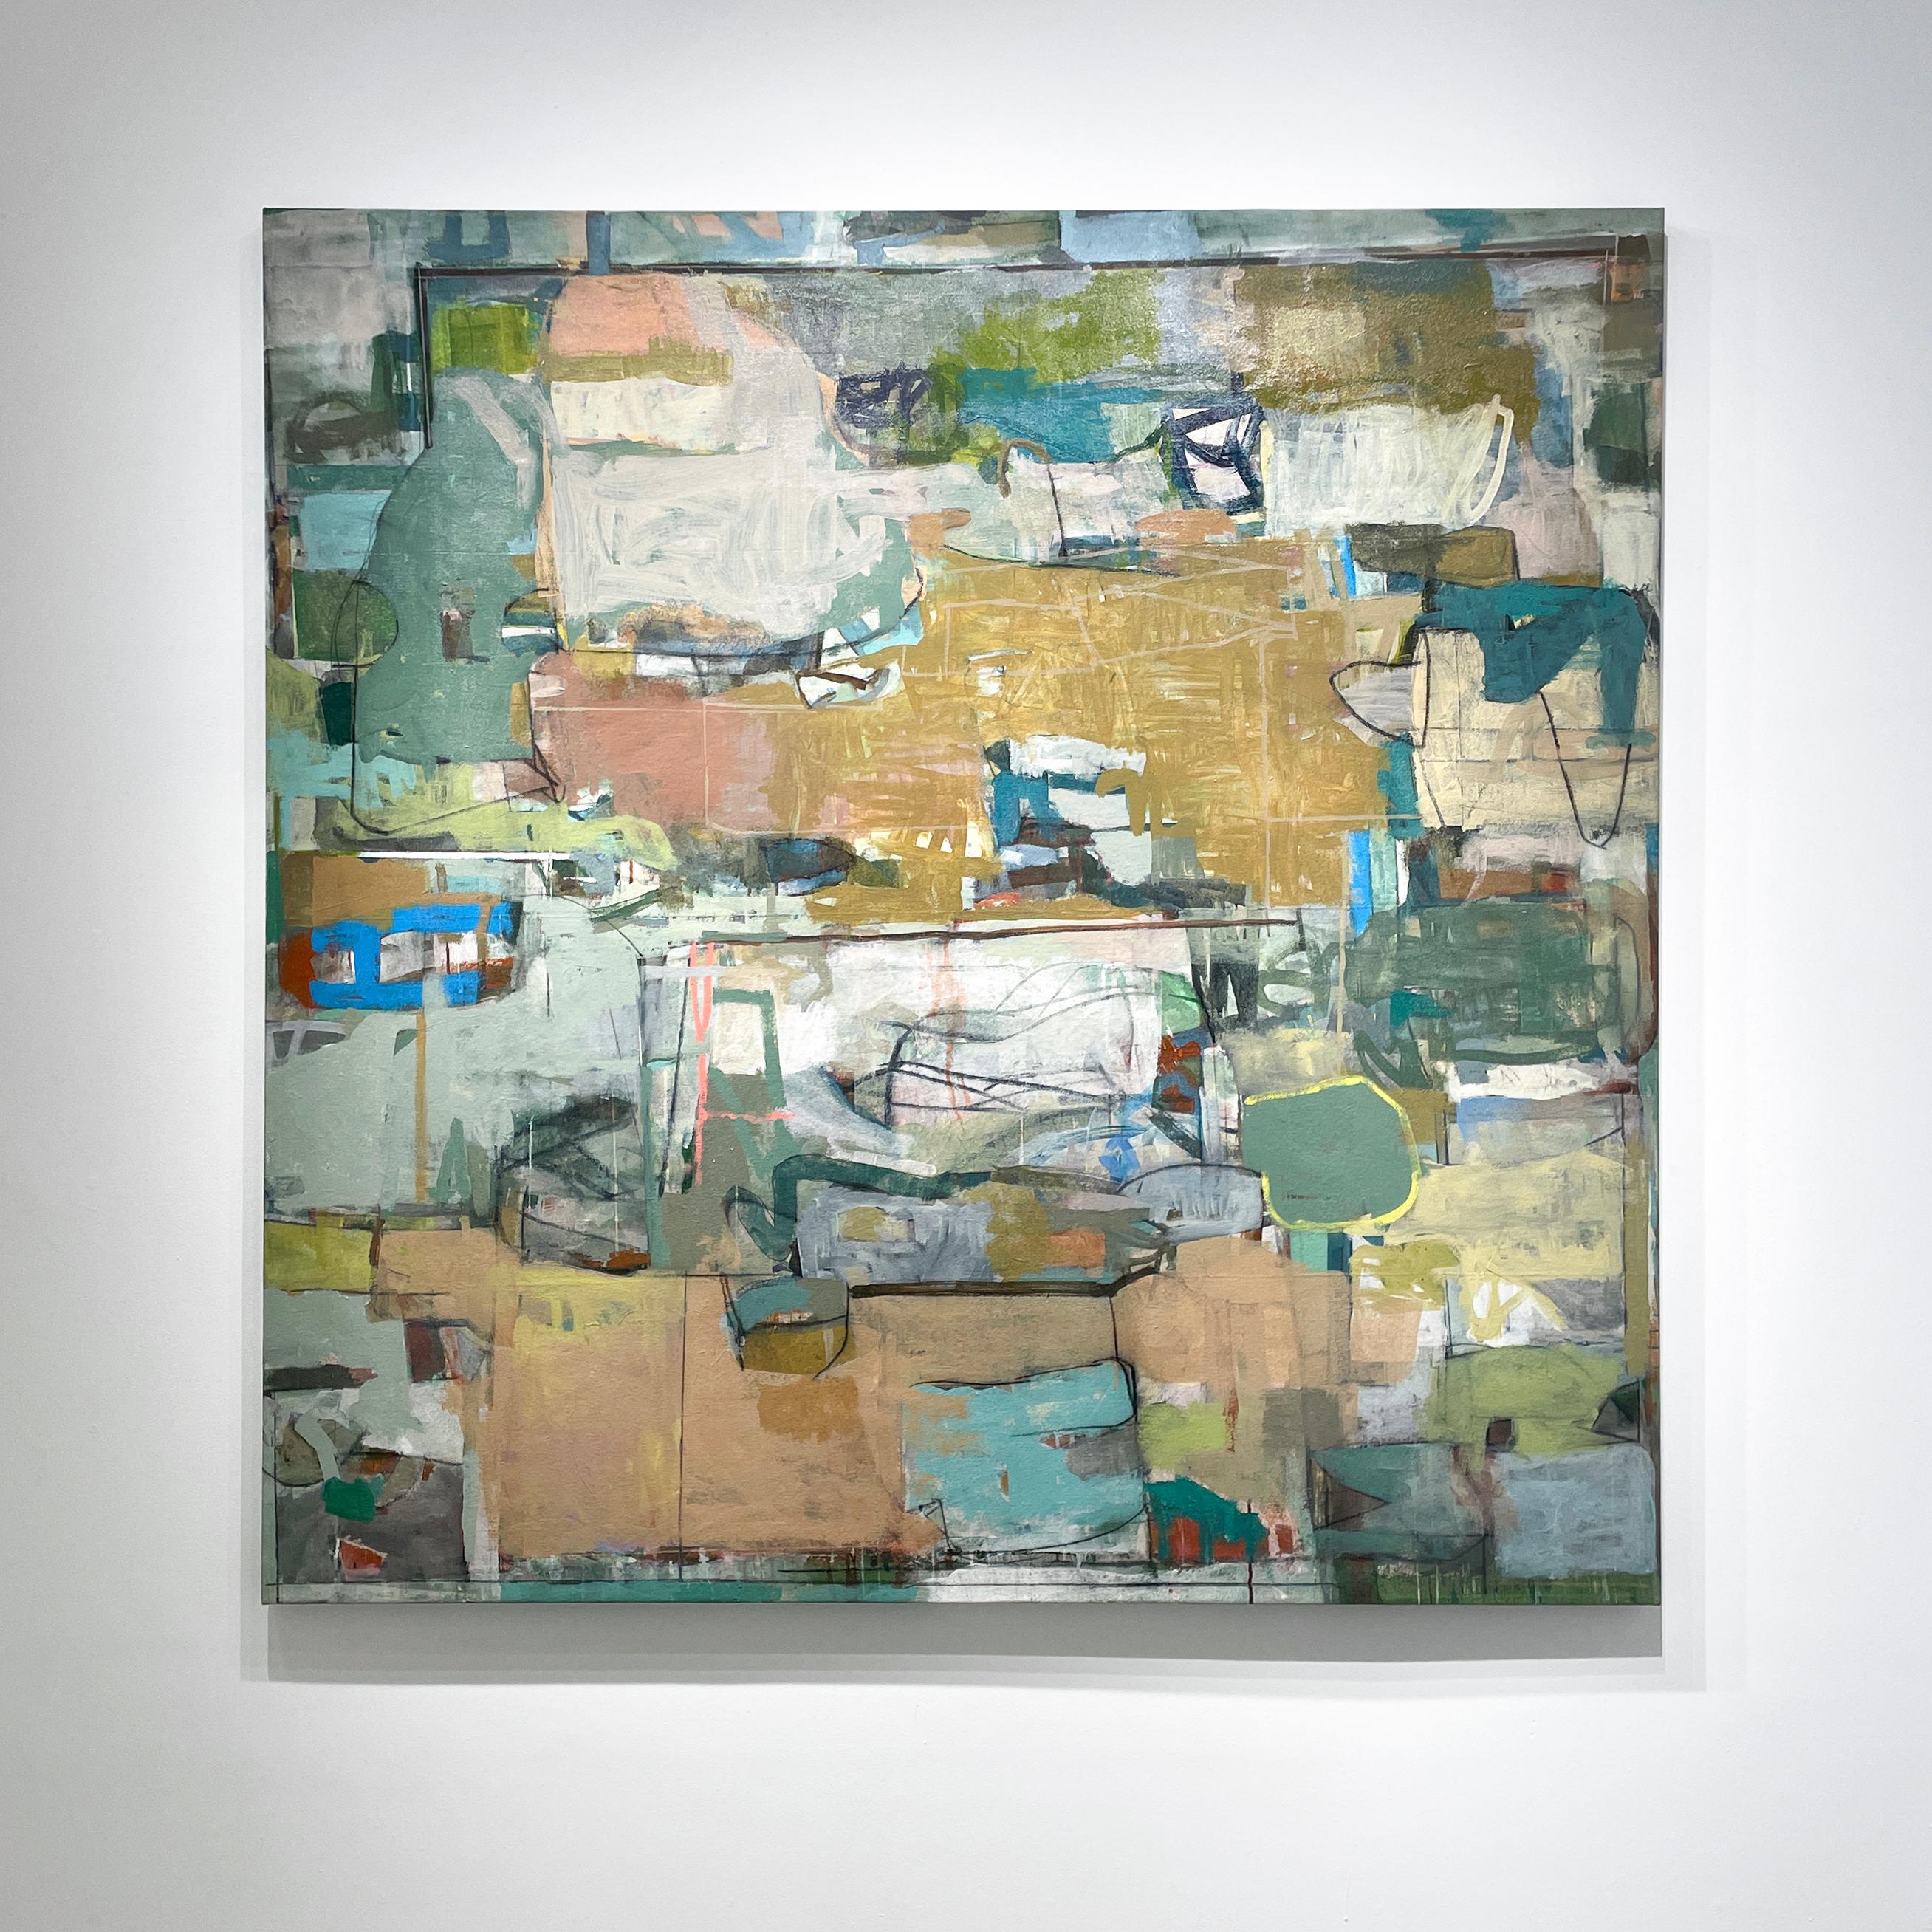 Poise (Großes, modernes, abstraktes expressionistisches Gemälde in Erdtönen) (Abstrakt), Painting, von James O'Shea